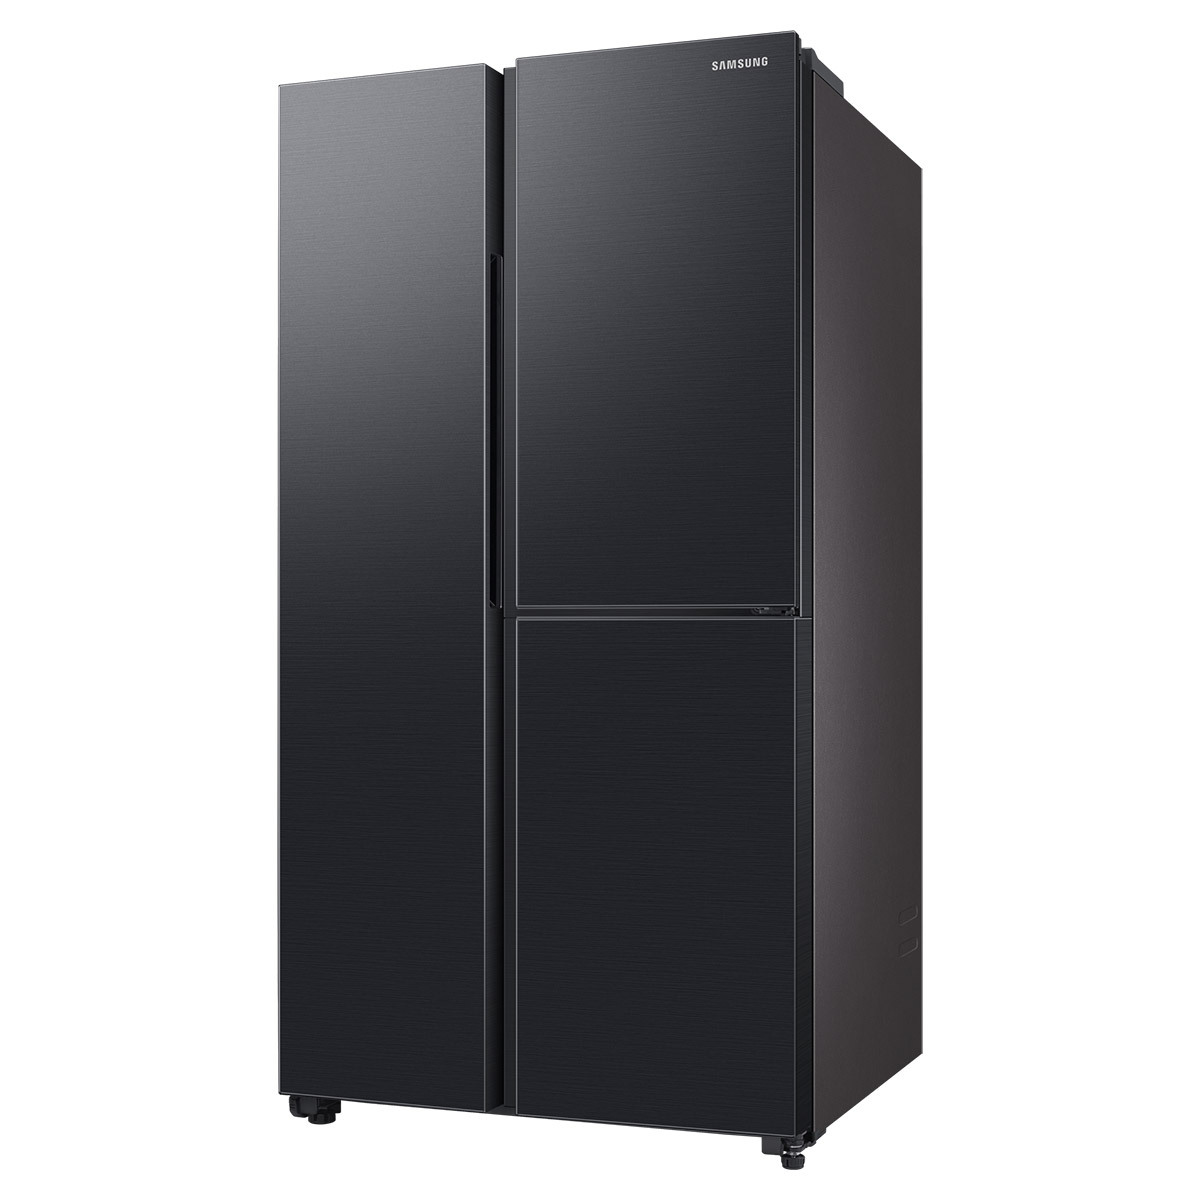 삼성 양문형 냉장고 846L - 잰틀 블랙 메탈